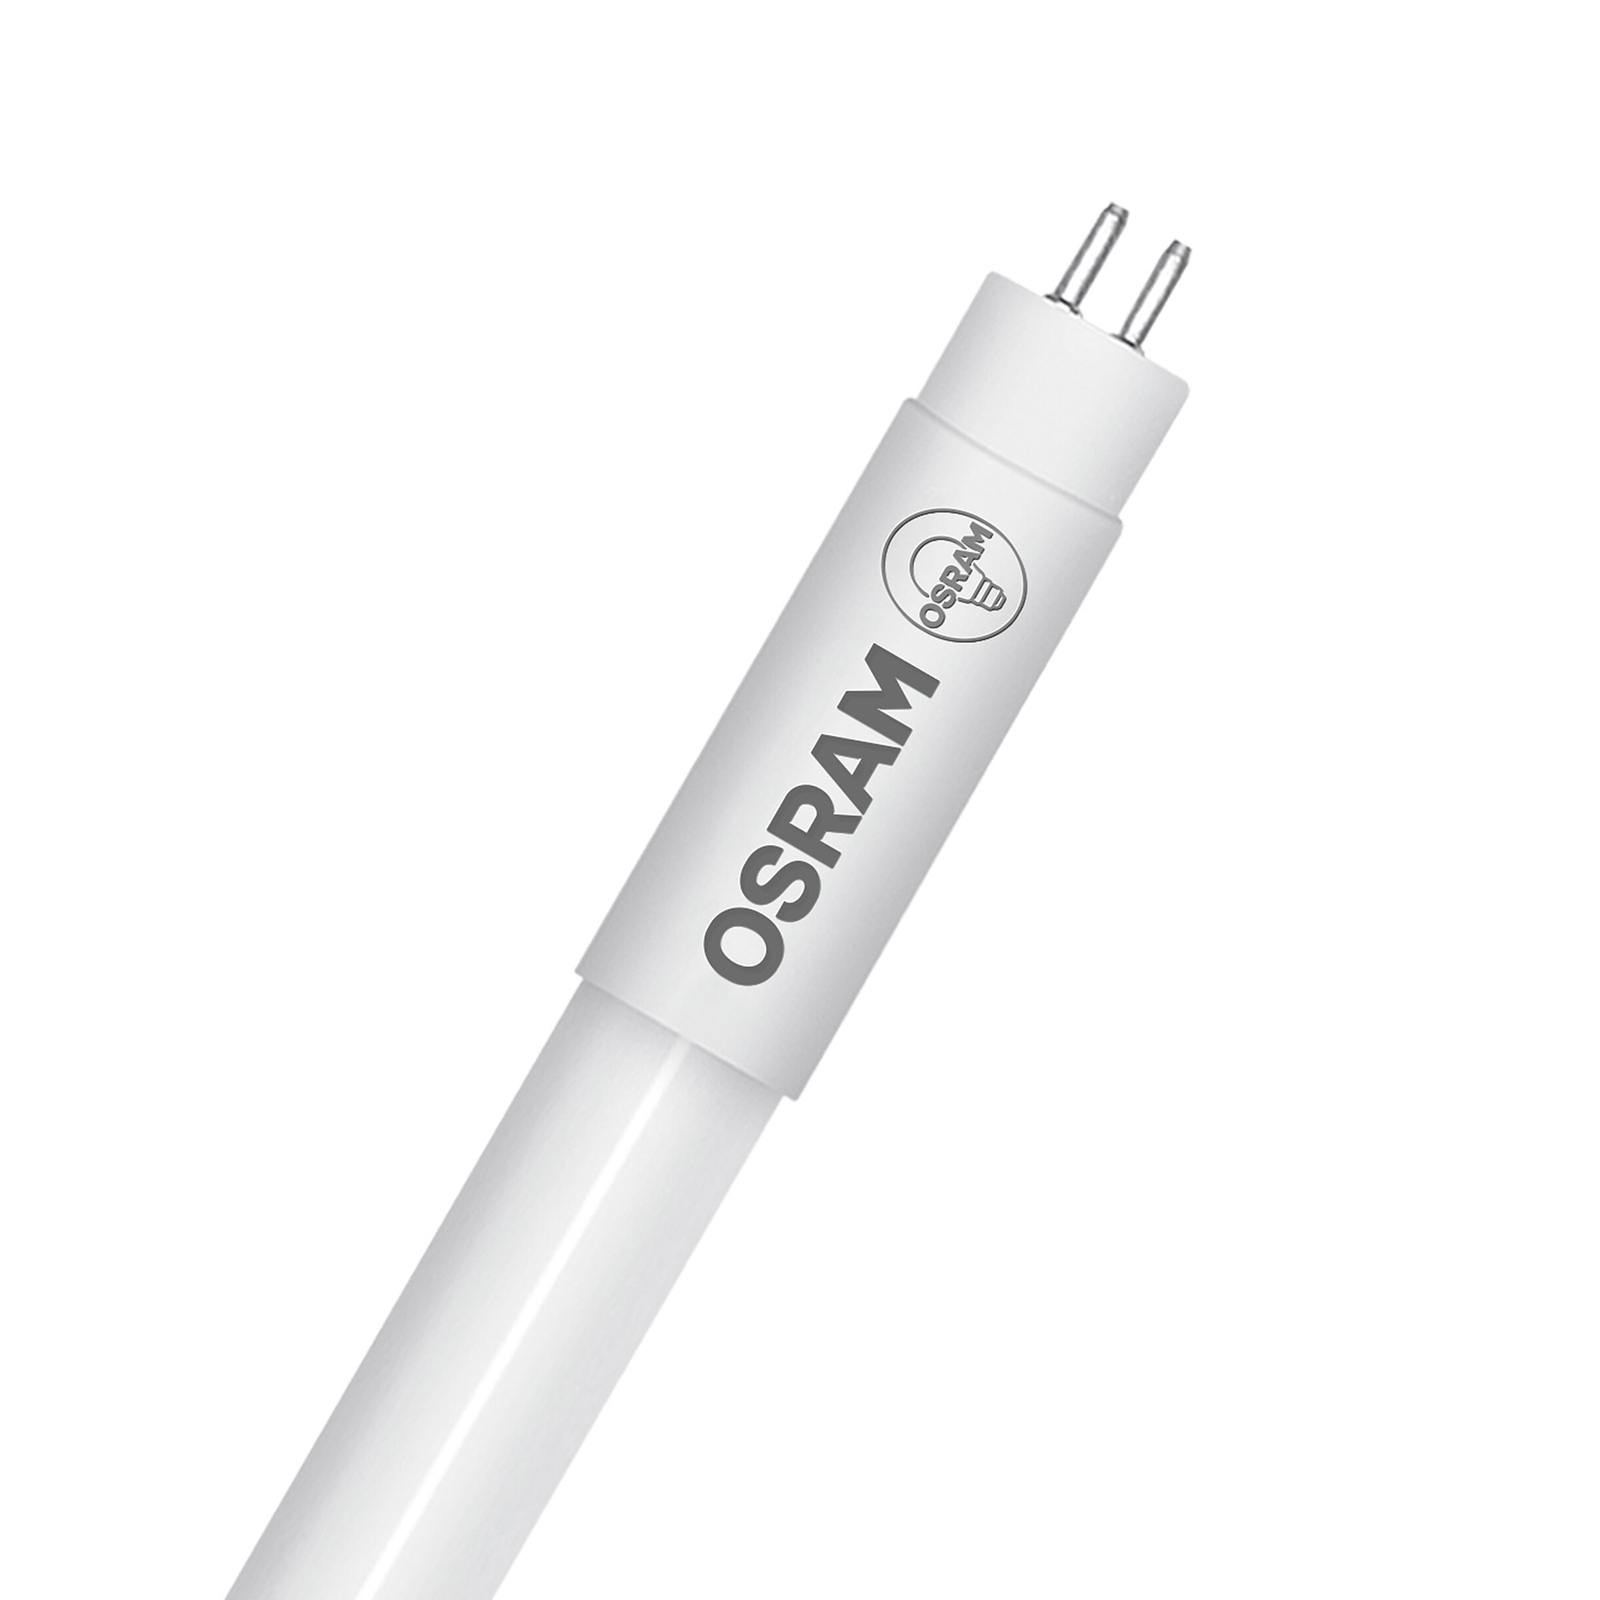 OSRAM SubstiTUBE T5 HF HE LED tube bulb 17W 6,500 K